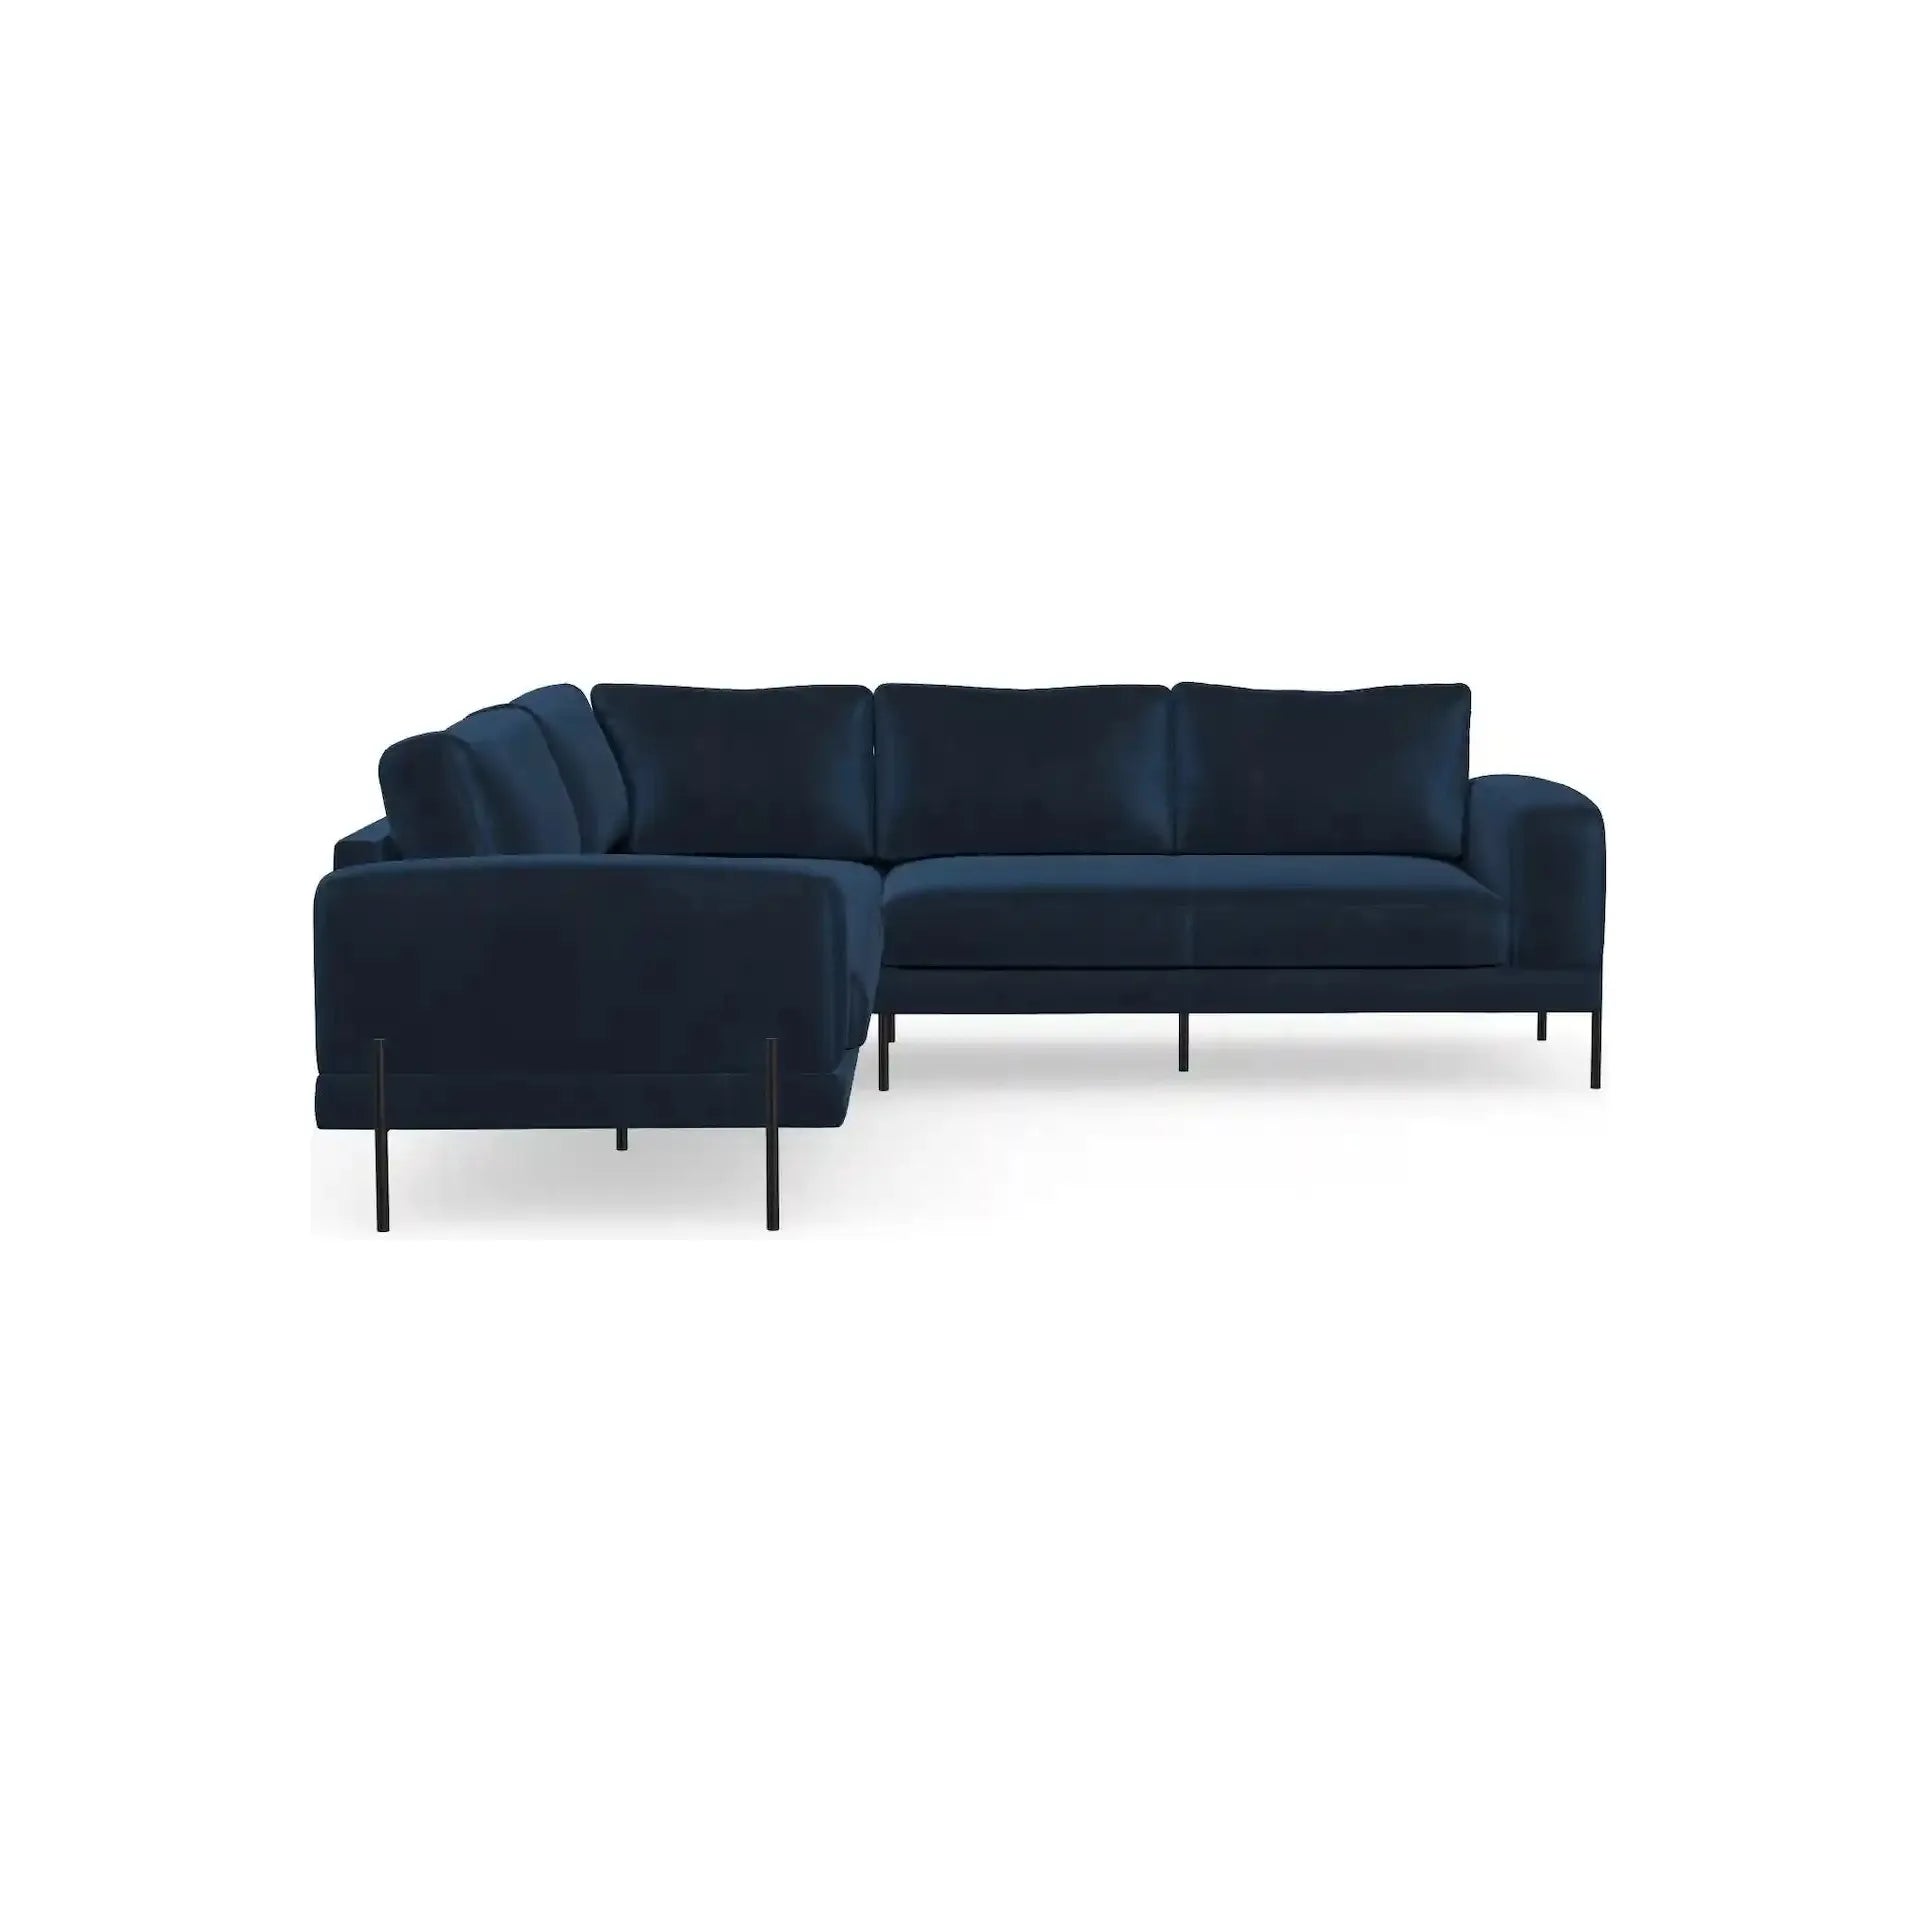 KARIN kampinė sofa, šviesiai mėlyna spalva